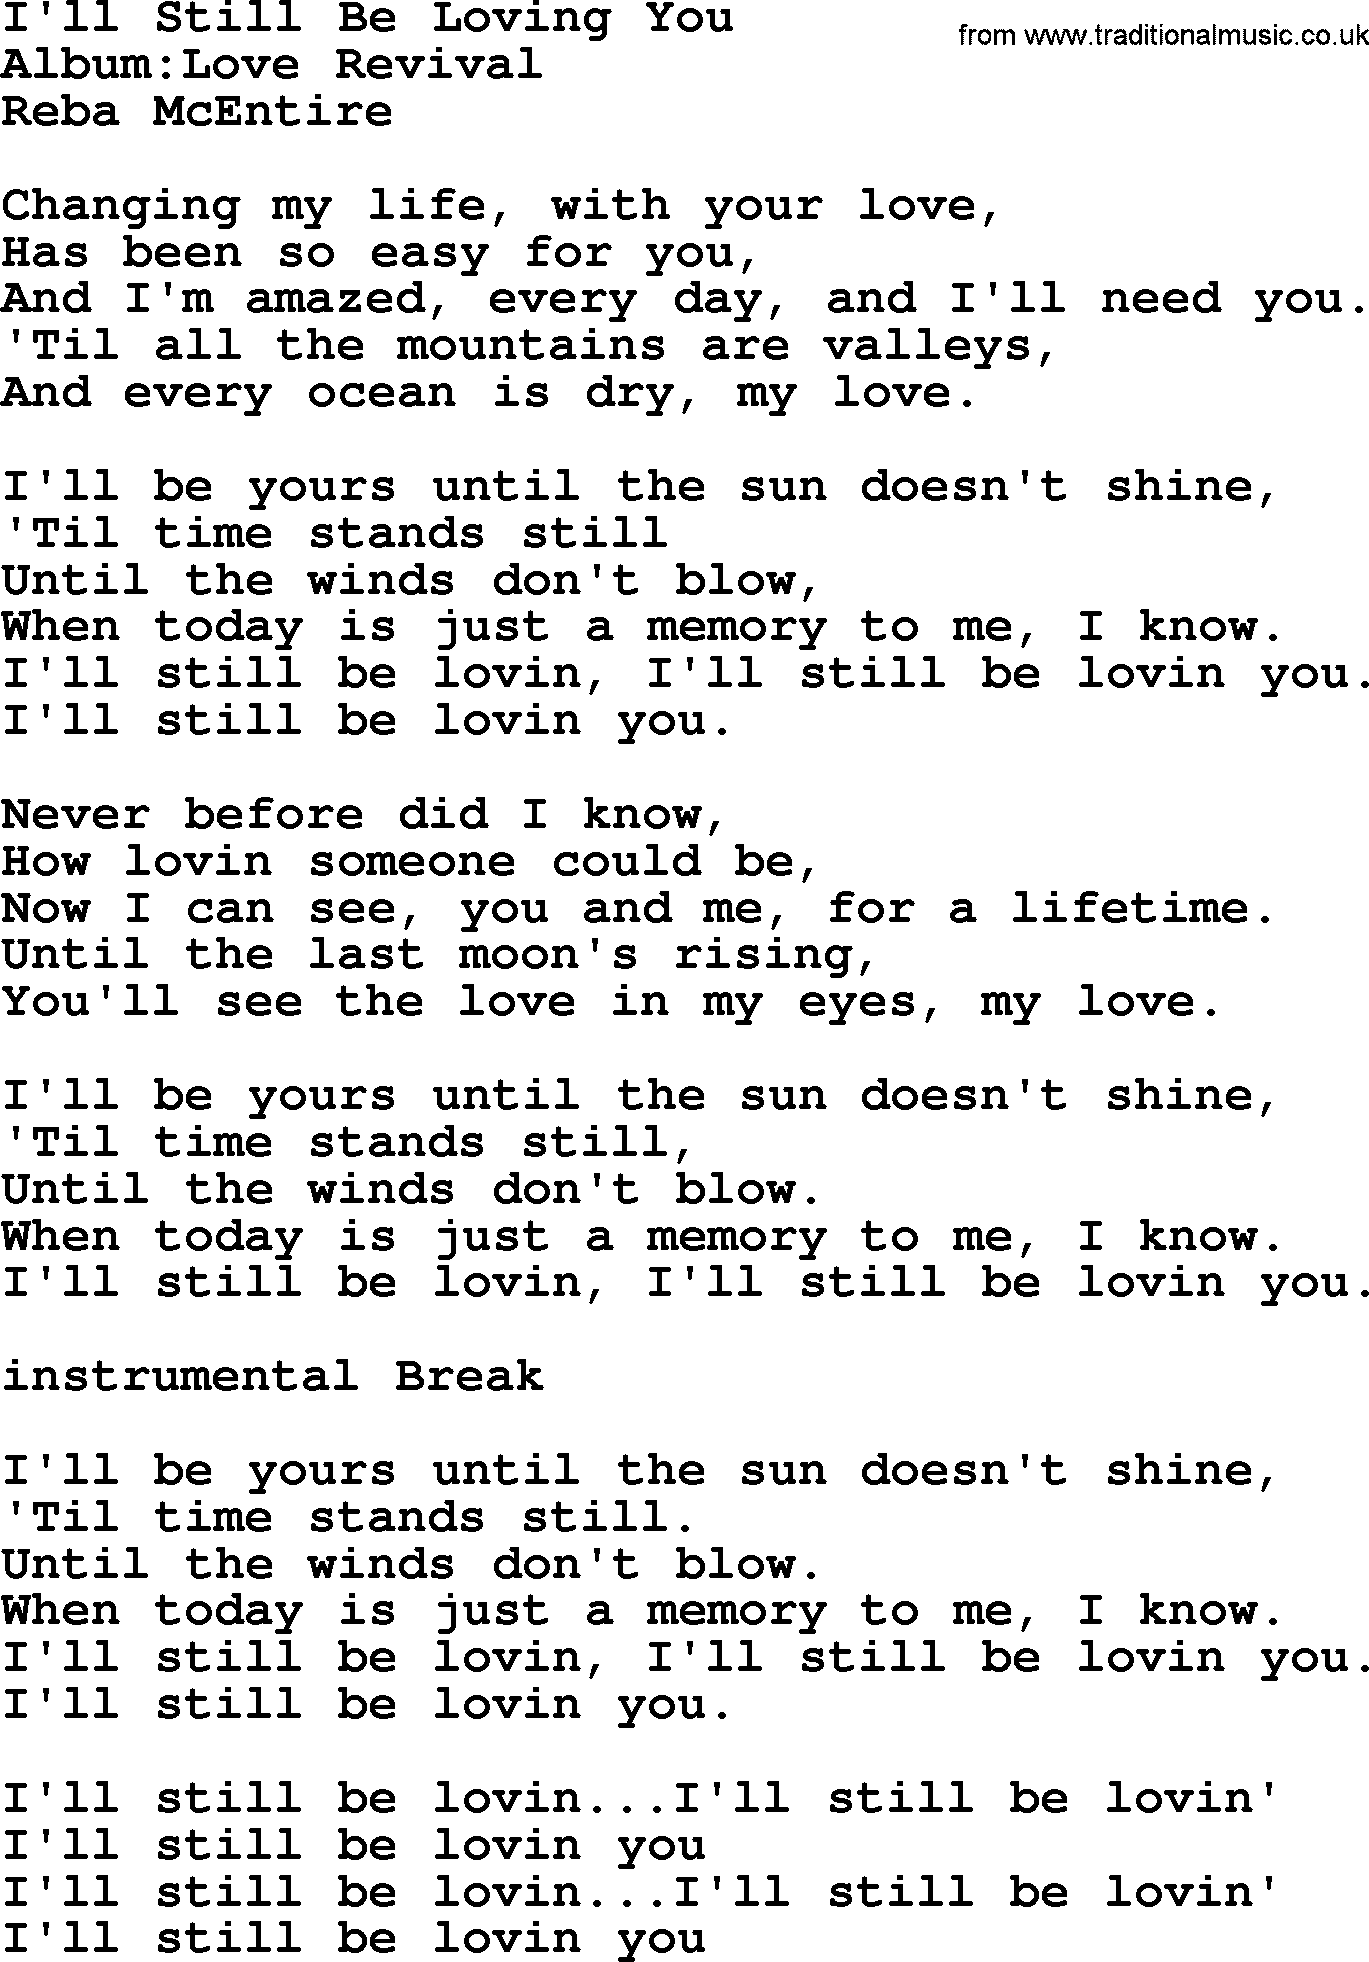 Reba McEntire song: I'll Still Be Loving You lyrics